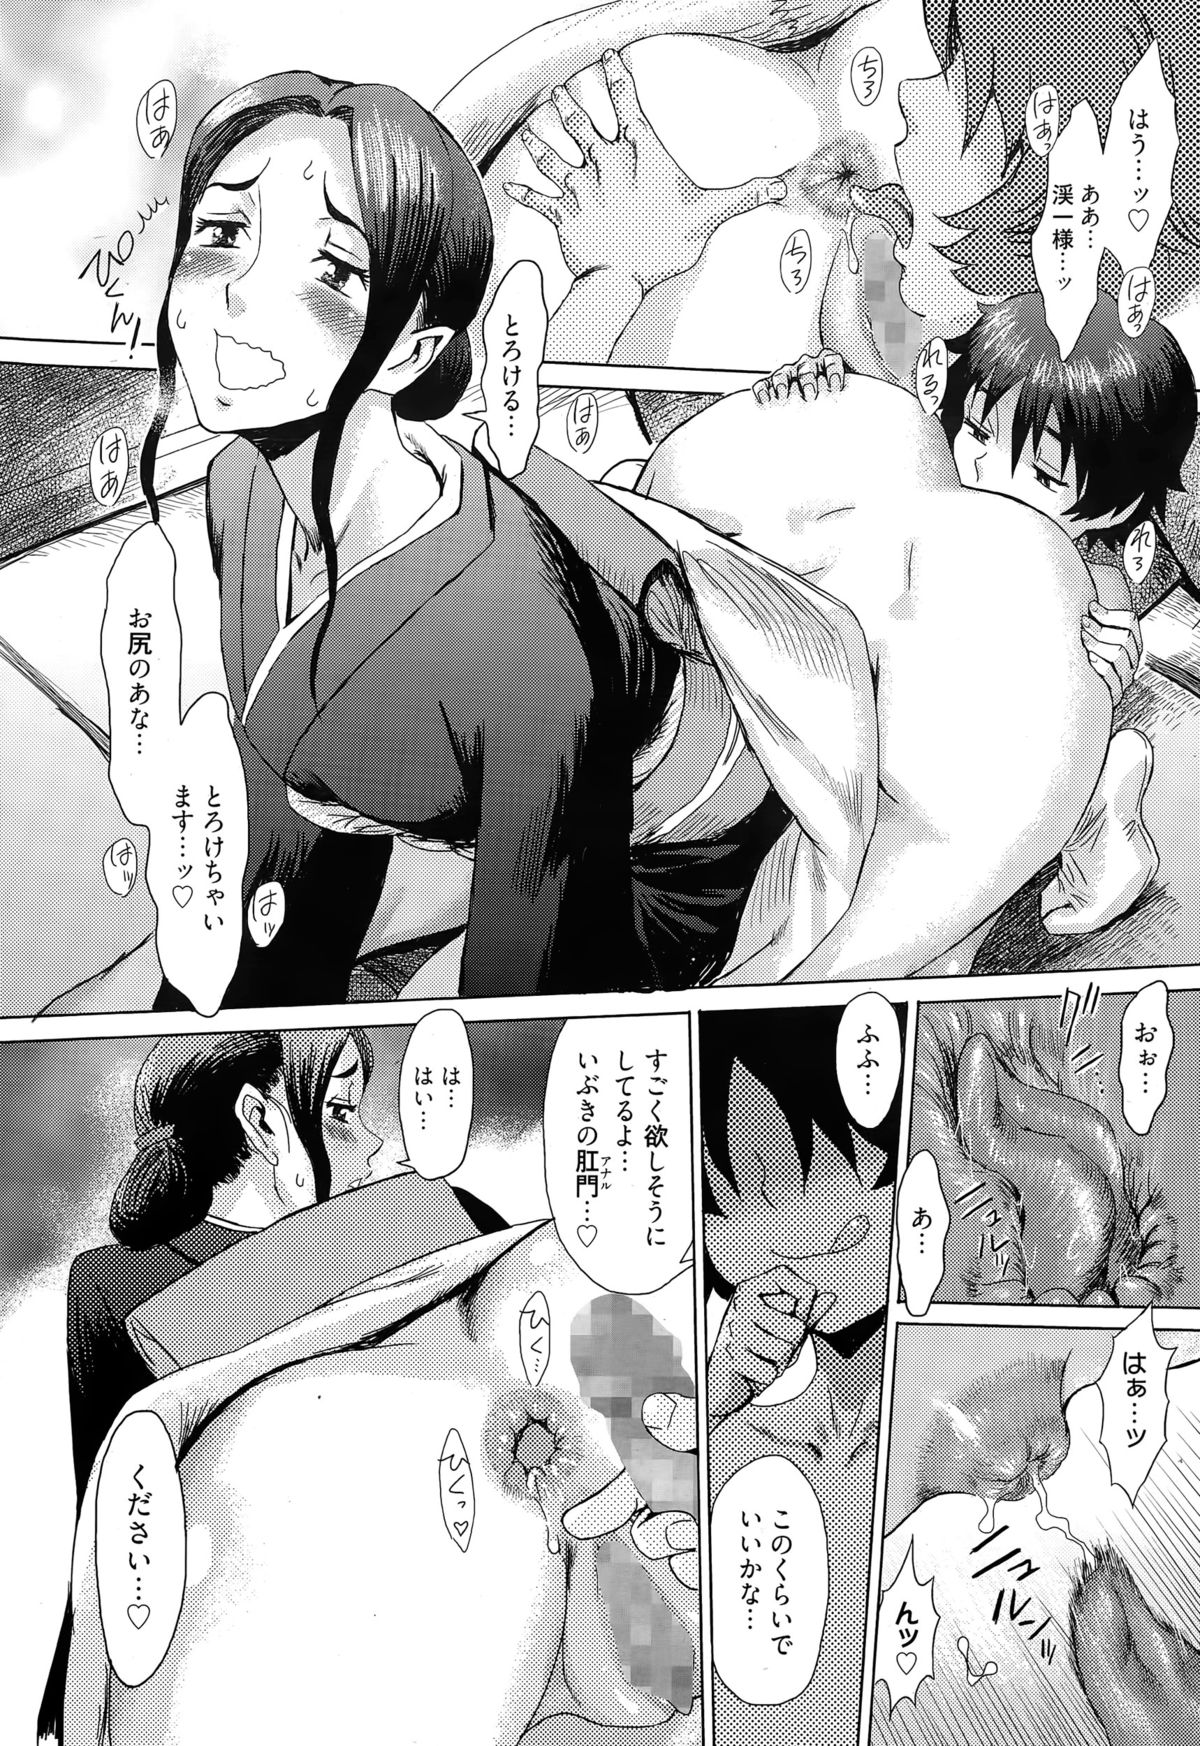 Manga Bangaichi 2015-05 page 14 full